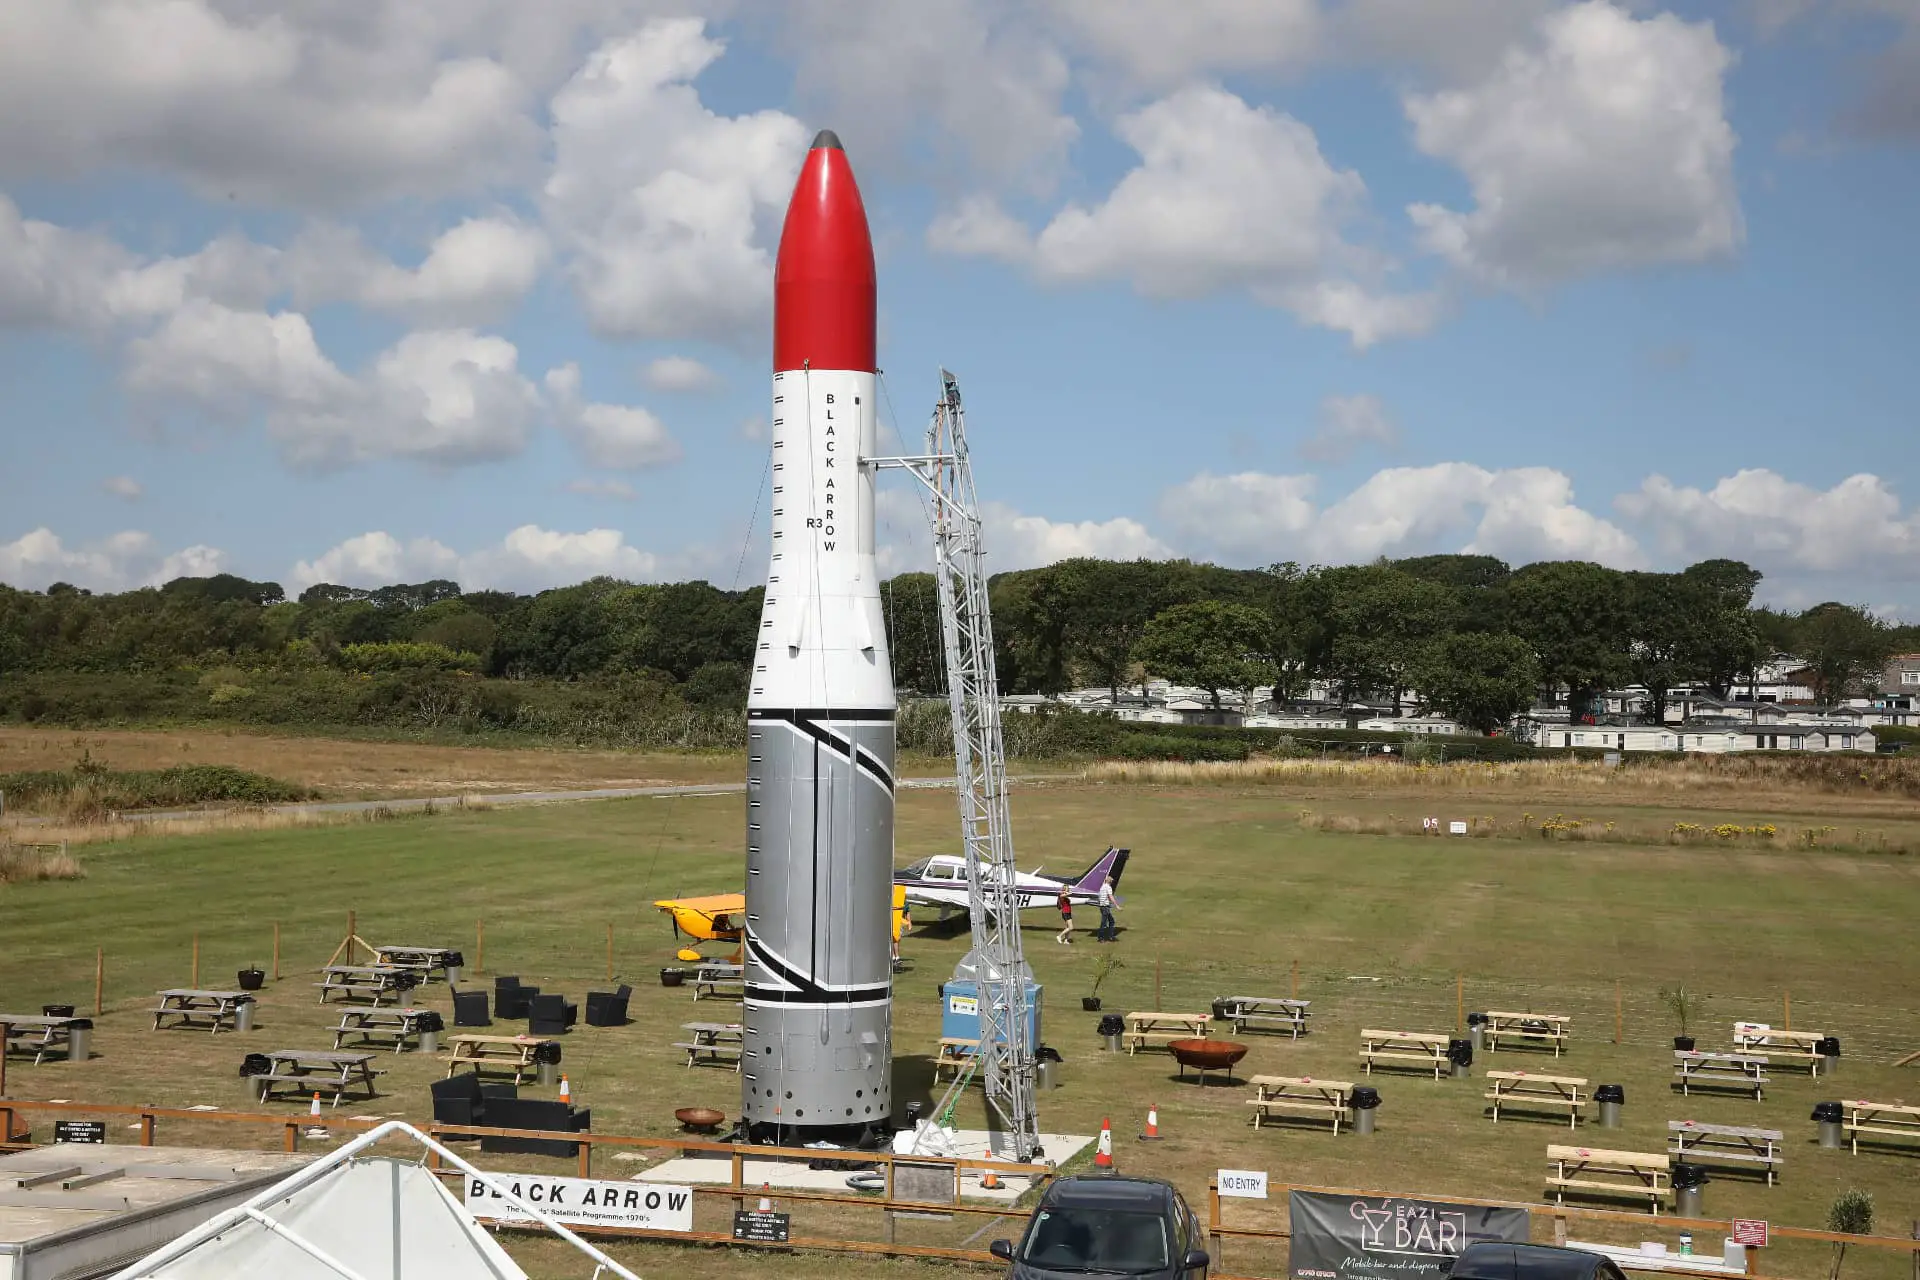 Full- sized Replica of Black Arrow in the Rocket Garden